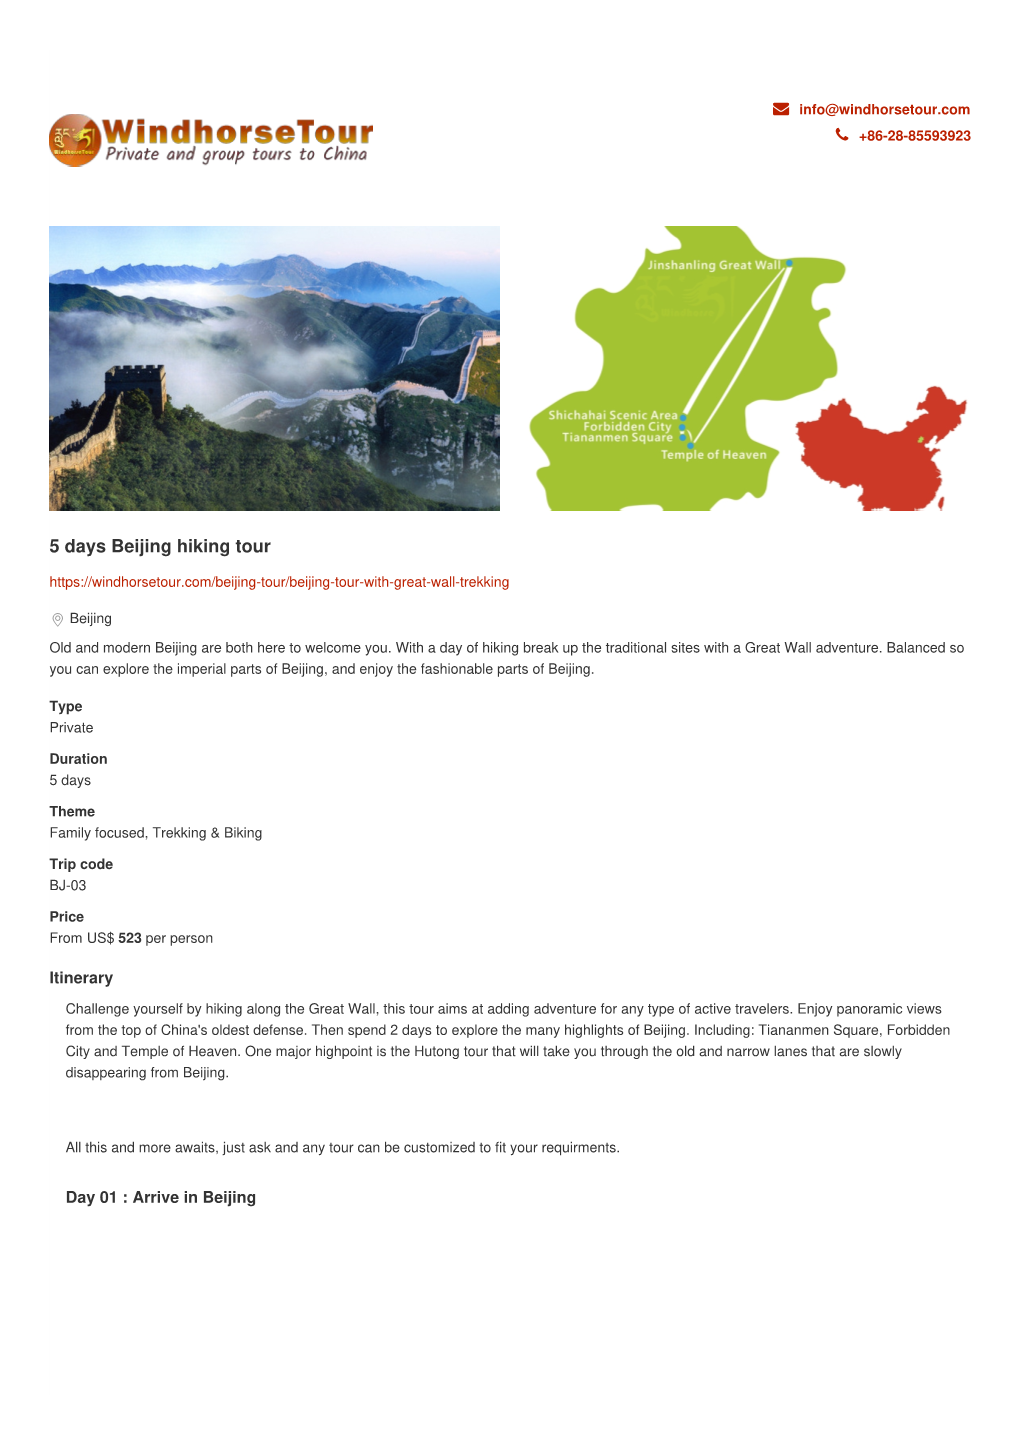 5 Days Beijing Hiking Tour